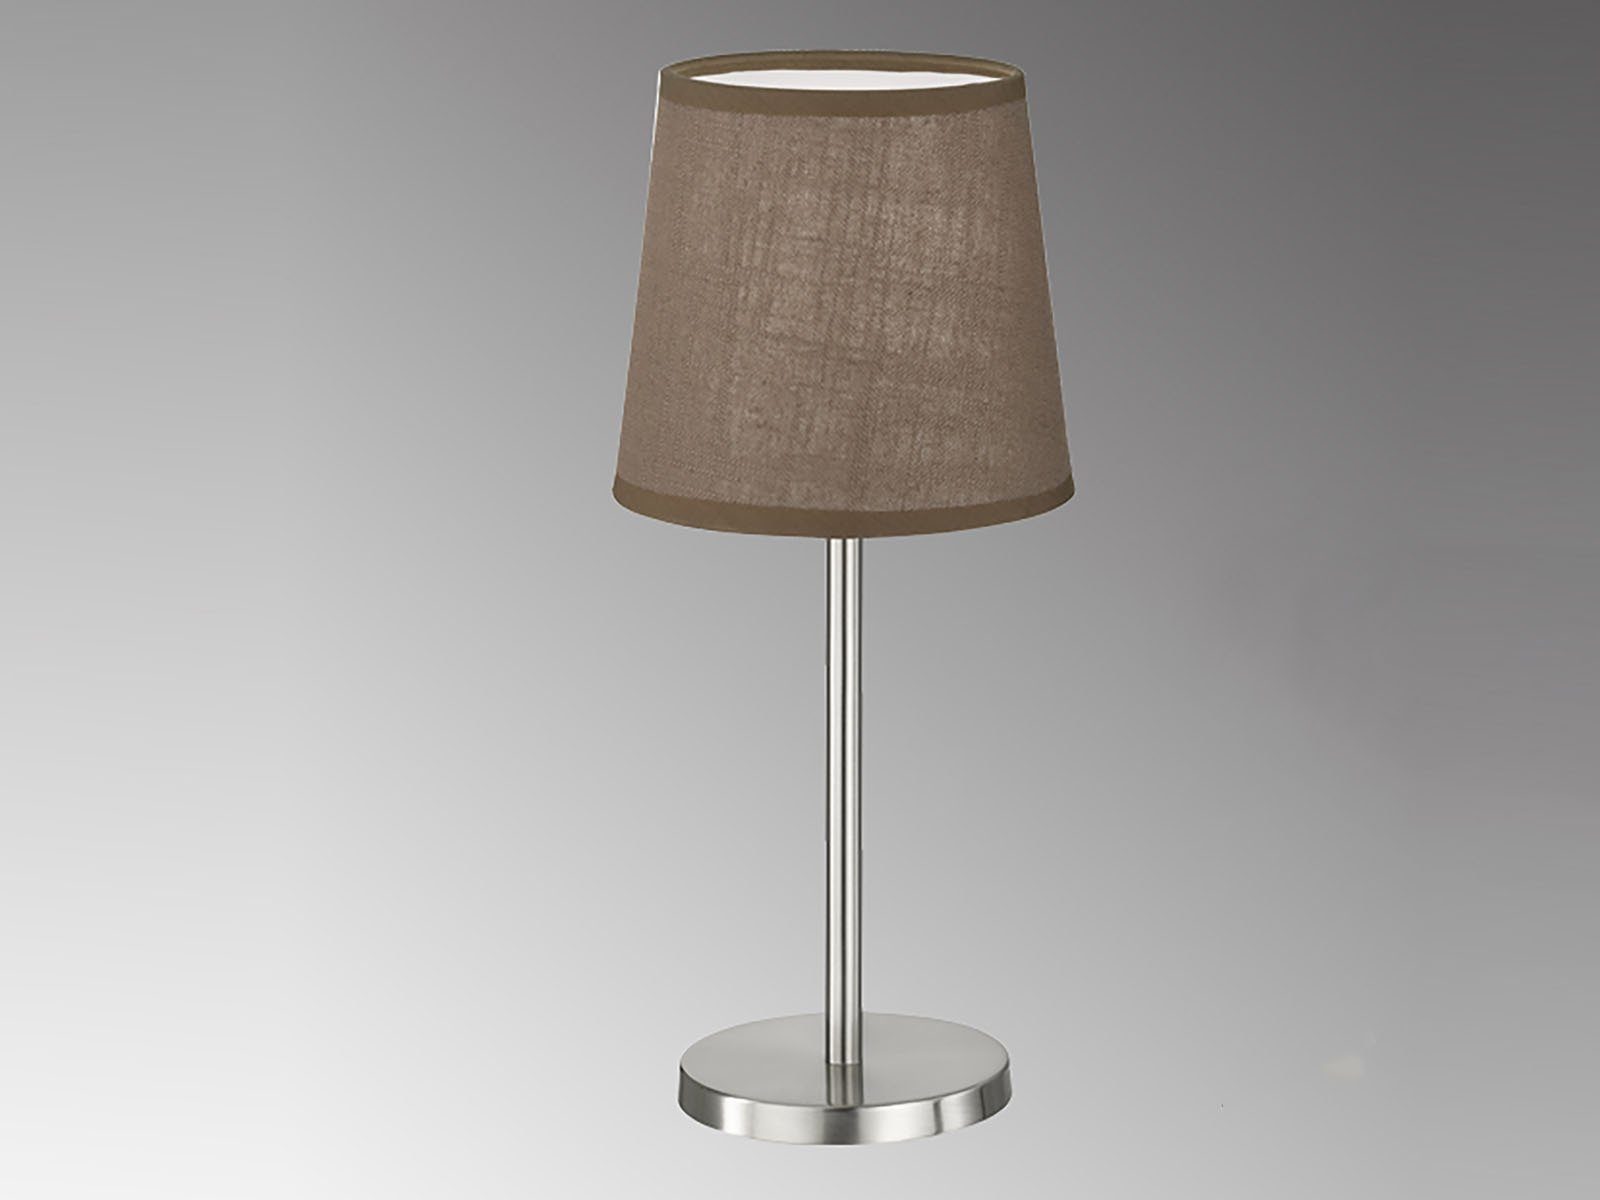 Lampenschirm wechselbar, 30cm FHL Höhe Design-klassiker Silber-Braun Stoff easy! LED Warmweiß, mit Braun, LED kleine Nachttischlampe,